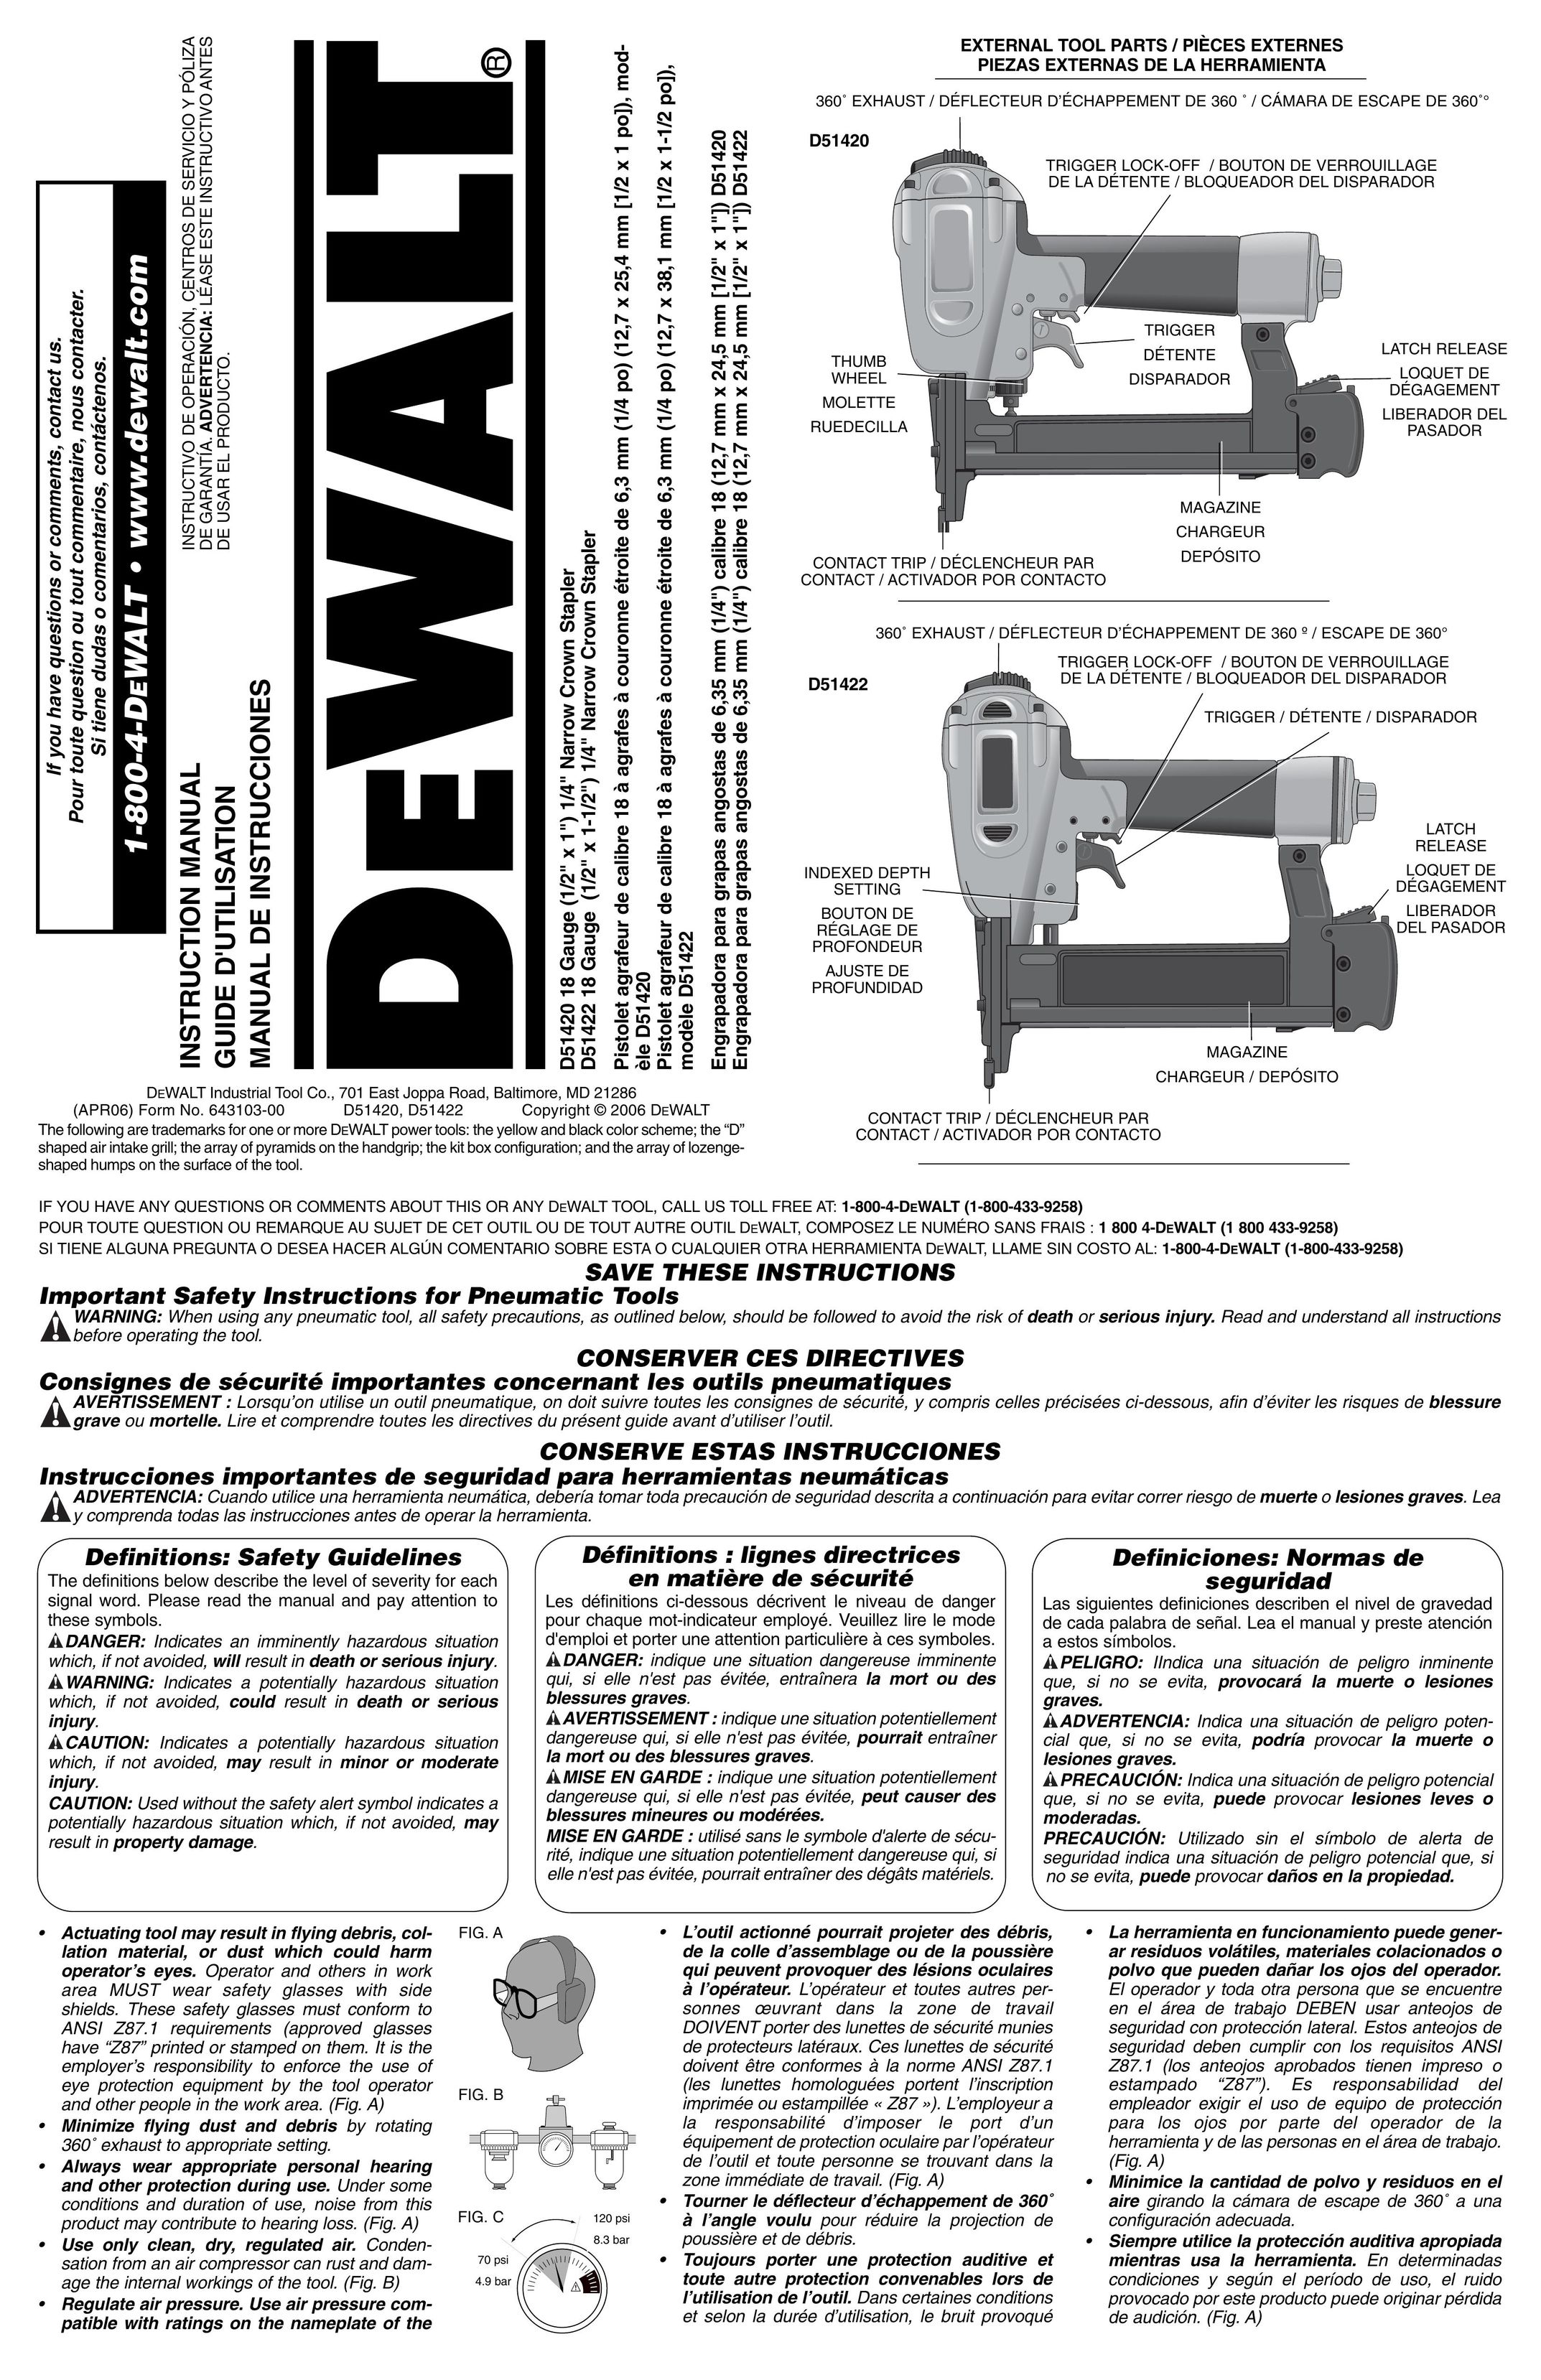 DeWalt D51420 Staple Gun User Manual